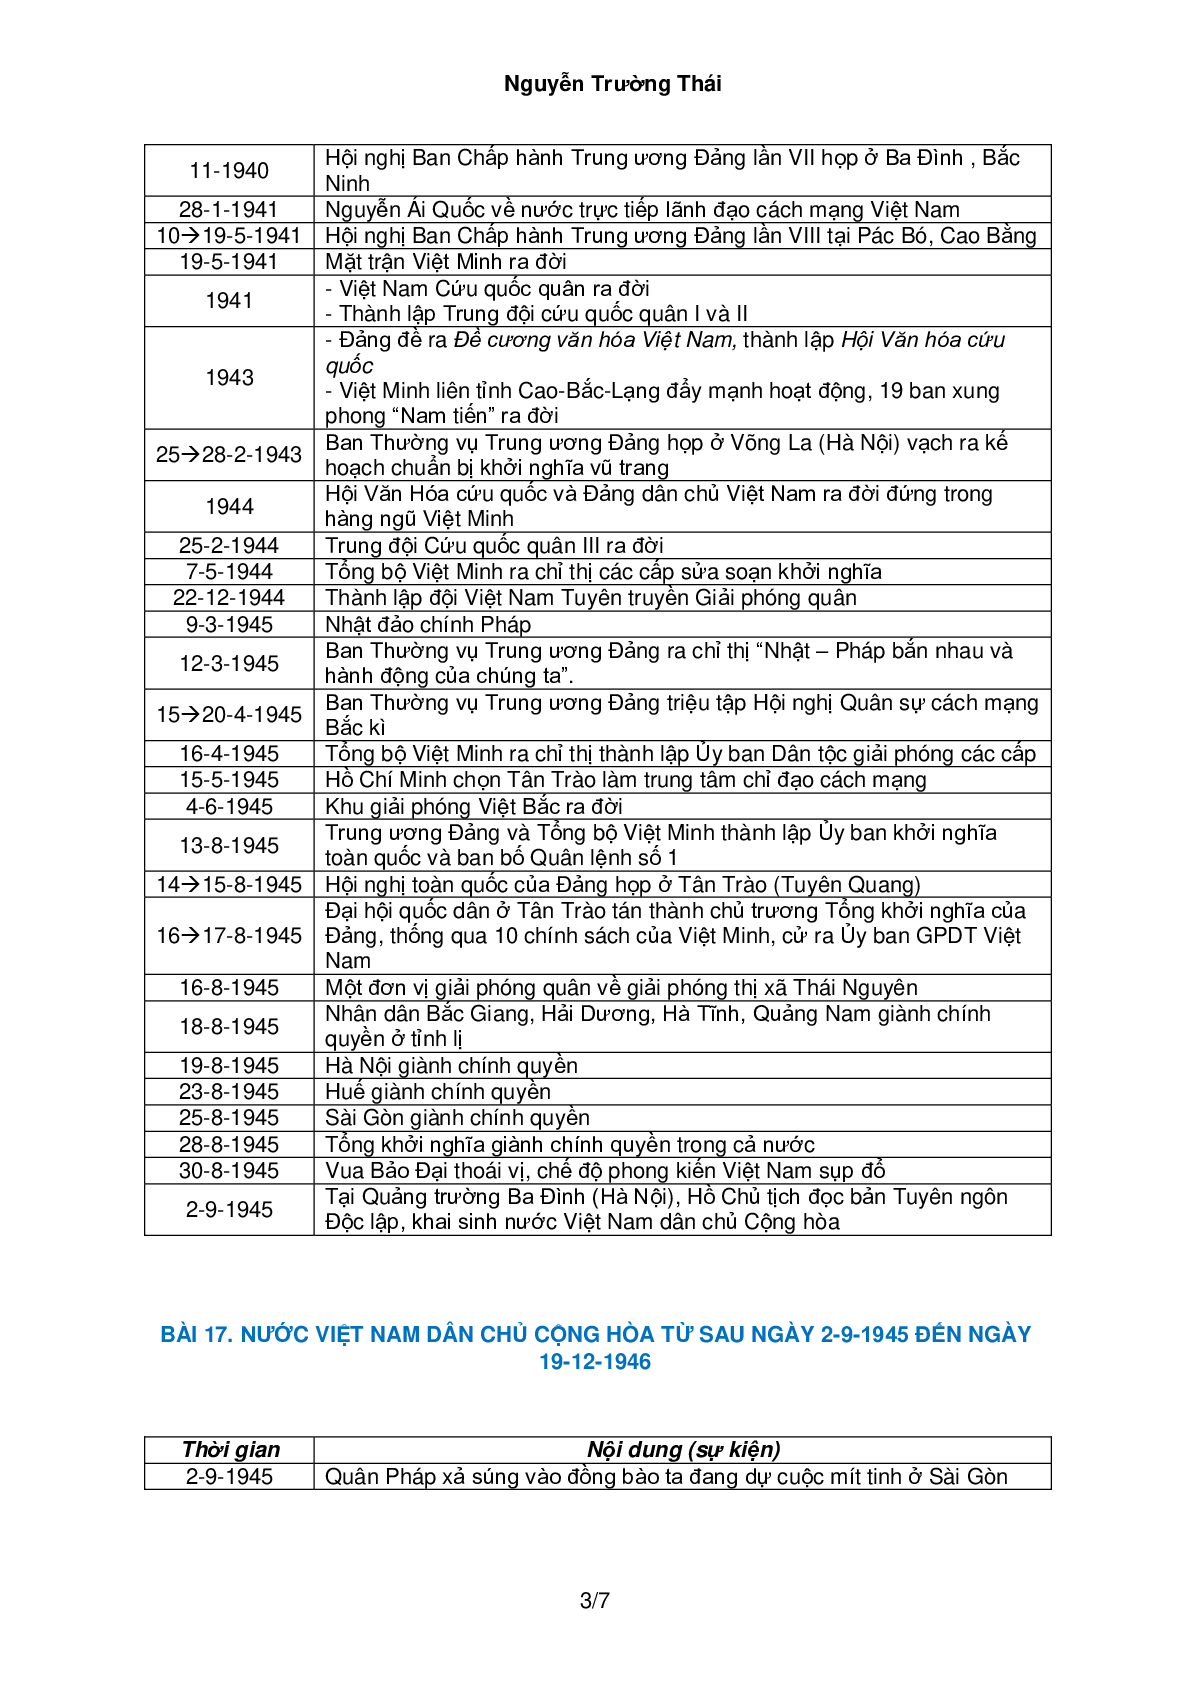 Bảng hệ thống sự kiện lịch sử Việt Nam theo bài môn Lịch sử lớp 12 (trang 3)